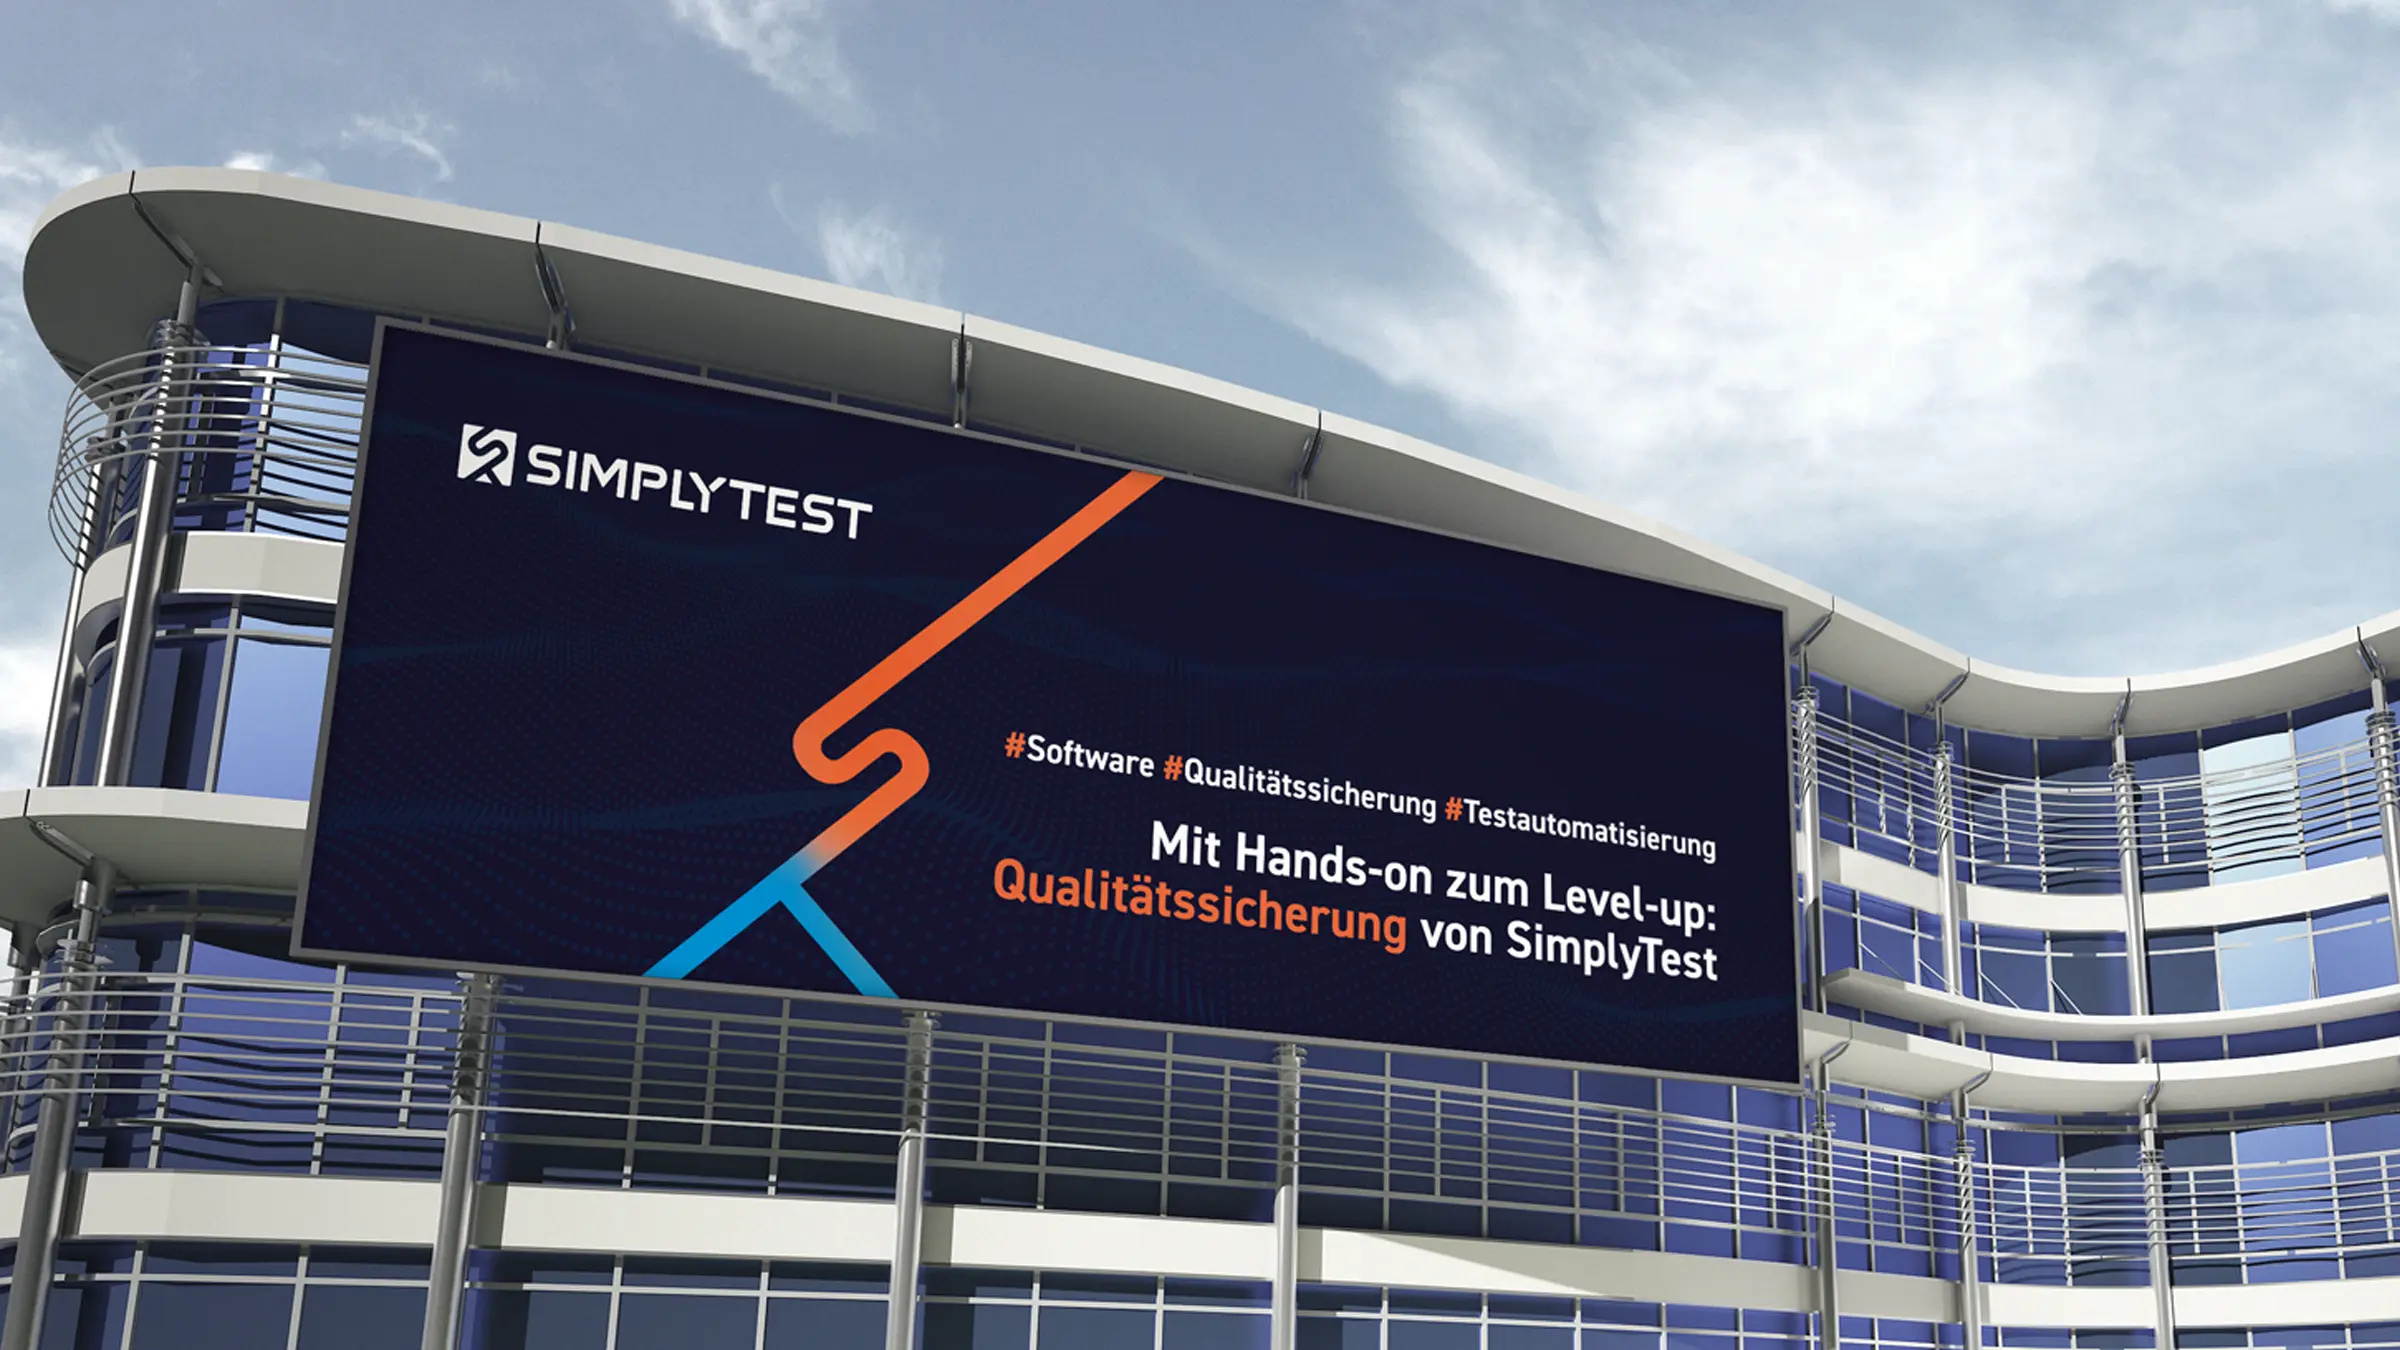 Ein riesiges Banner an einem modernen Gebäude mit Werbung zu den Themen Software, Qualitätssicherung und Testautomatisierung im Corporate Design von SimplyTest